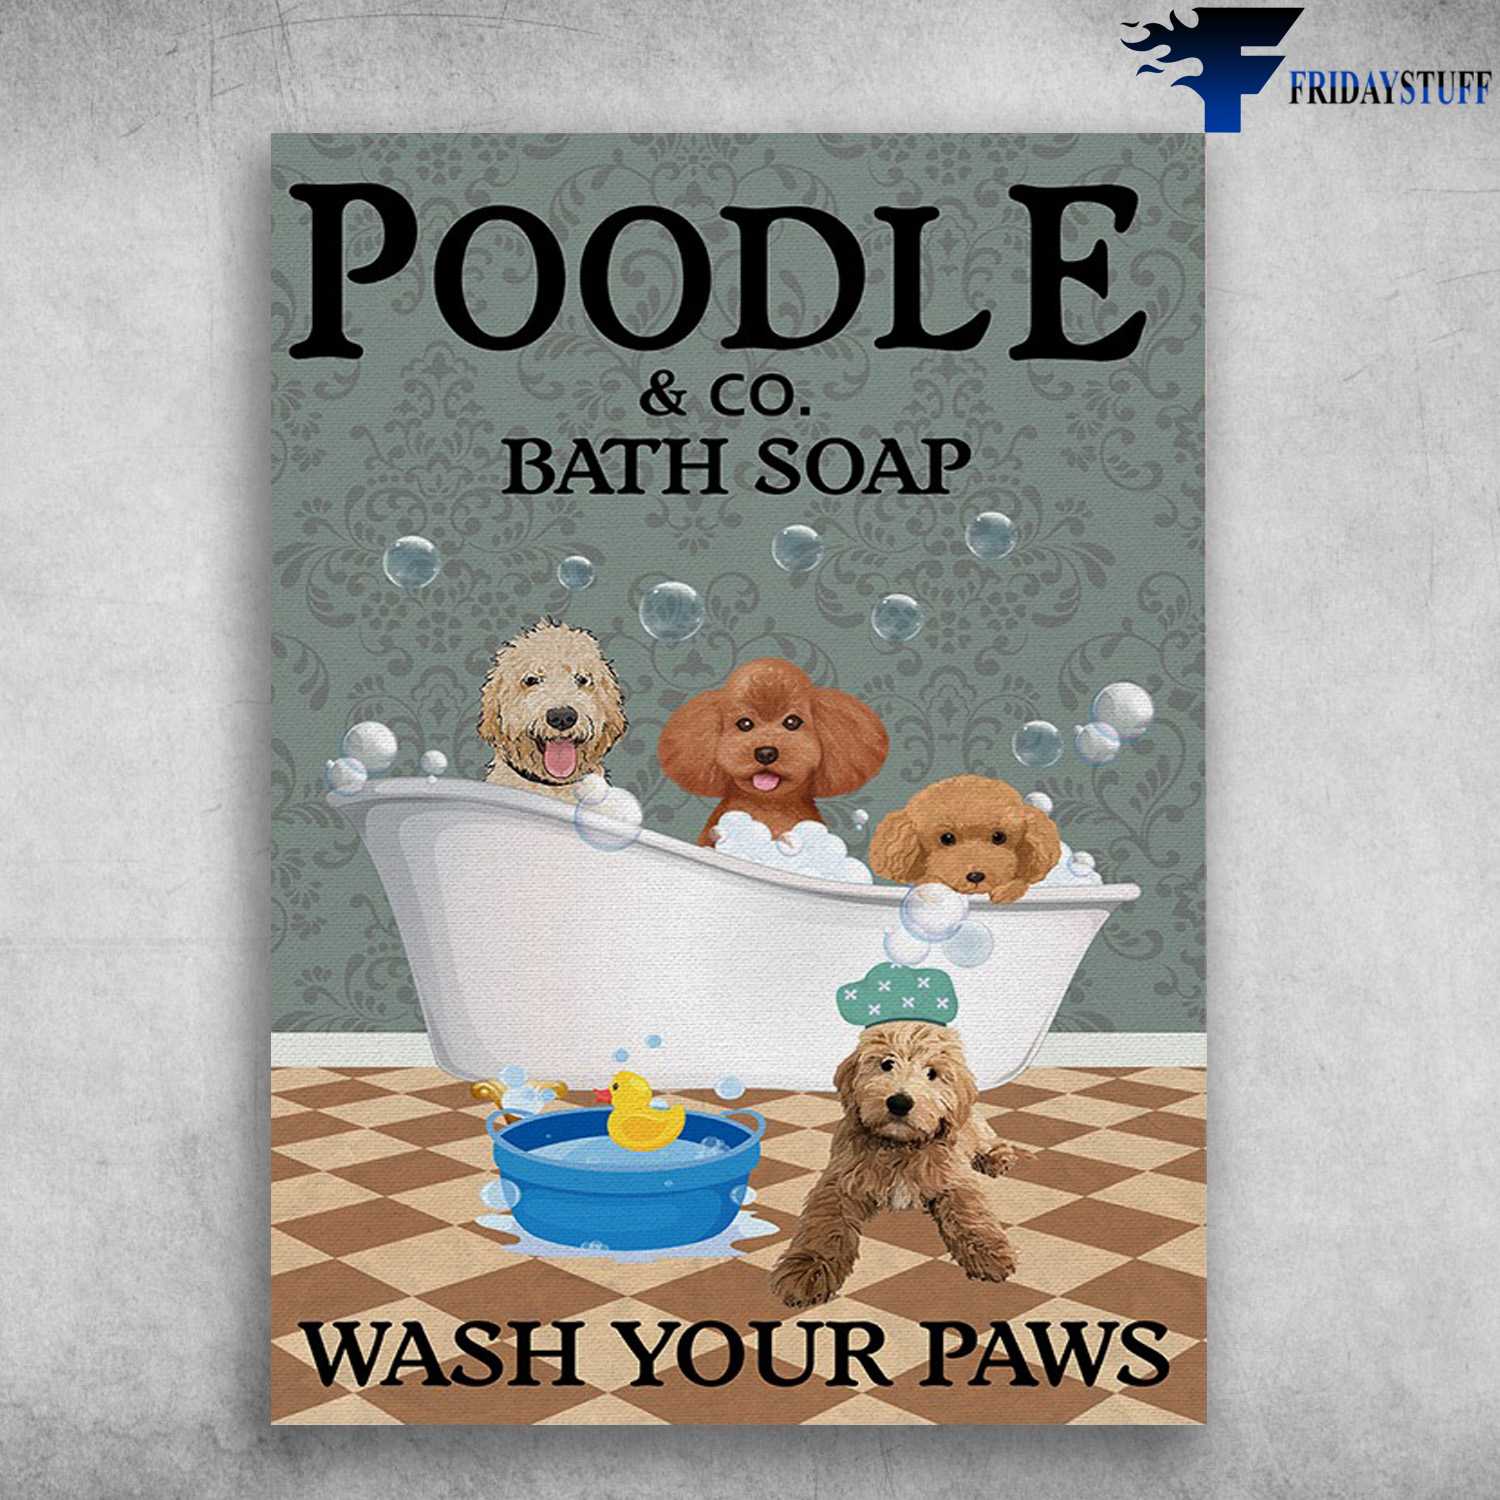 Poodle Bath Soap - Poodle And CO. Bath Soap, Wash Your Paws